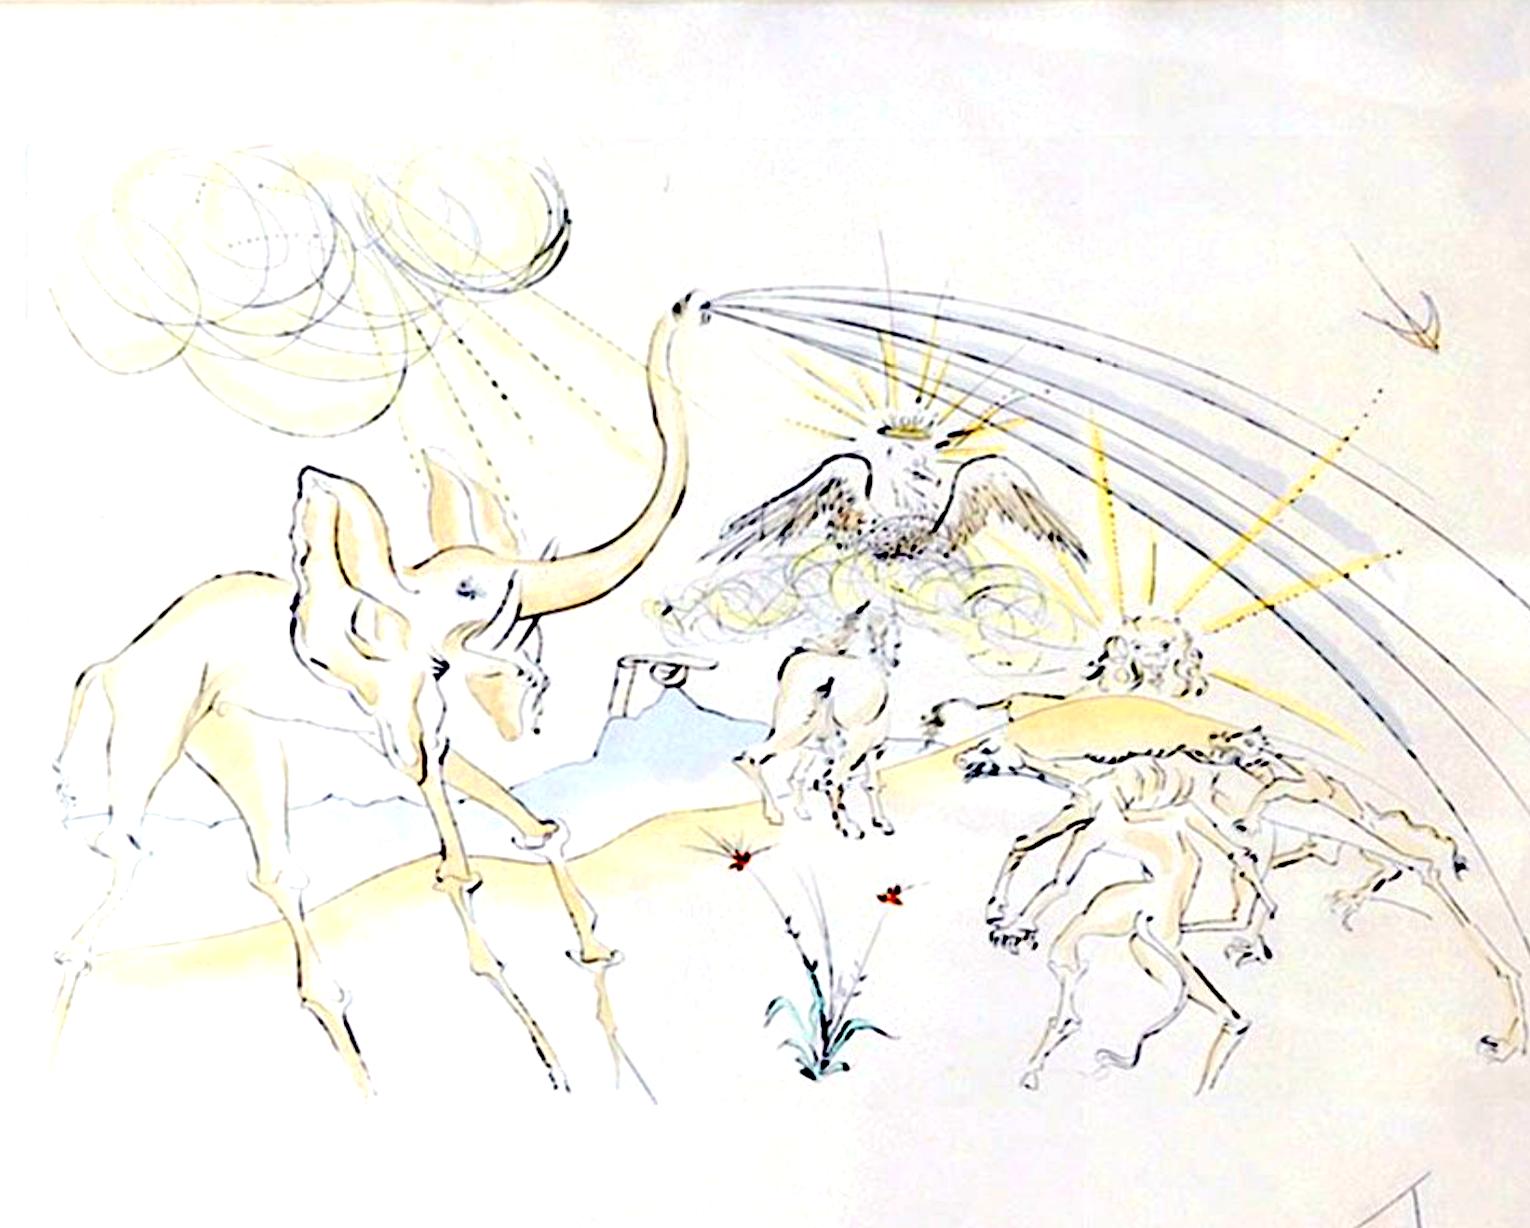 大象系列之二 76x56cm  1974 版画EA艺术家铅笔签名.png